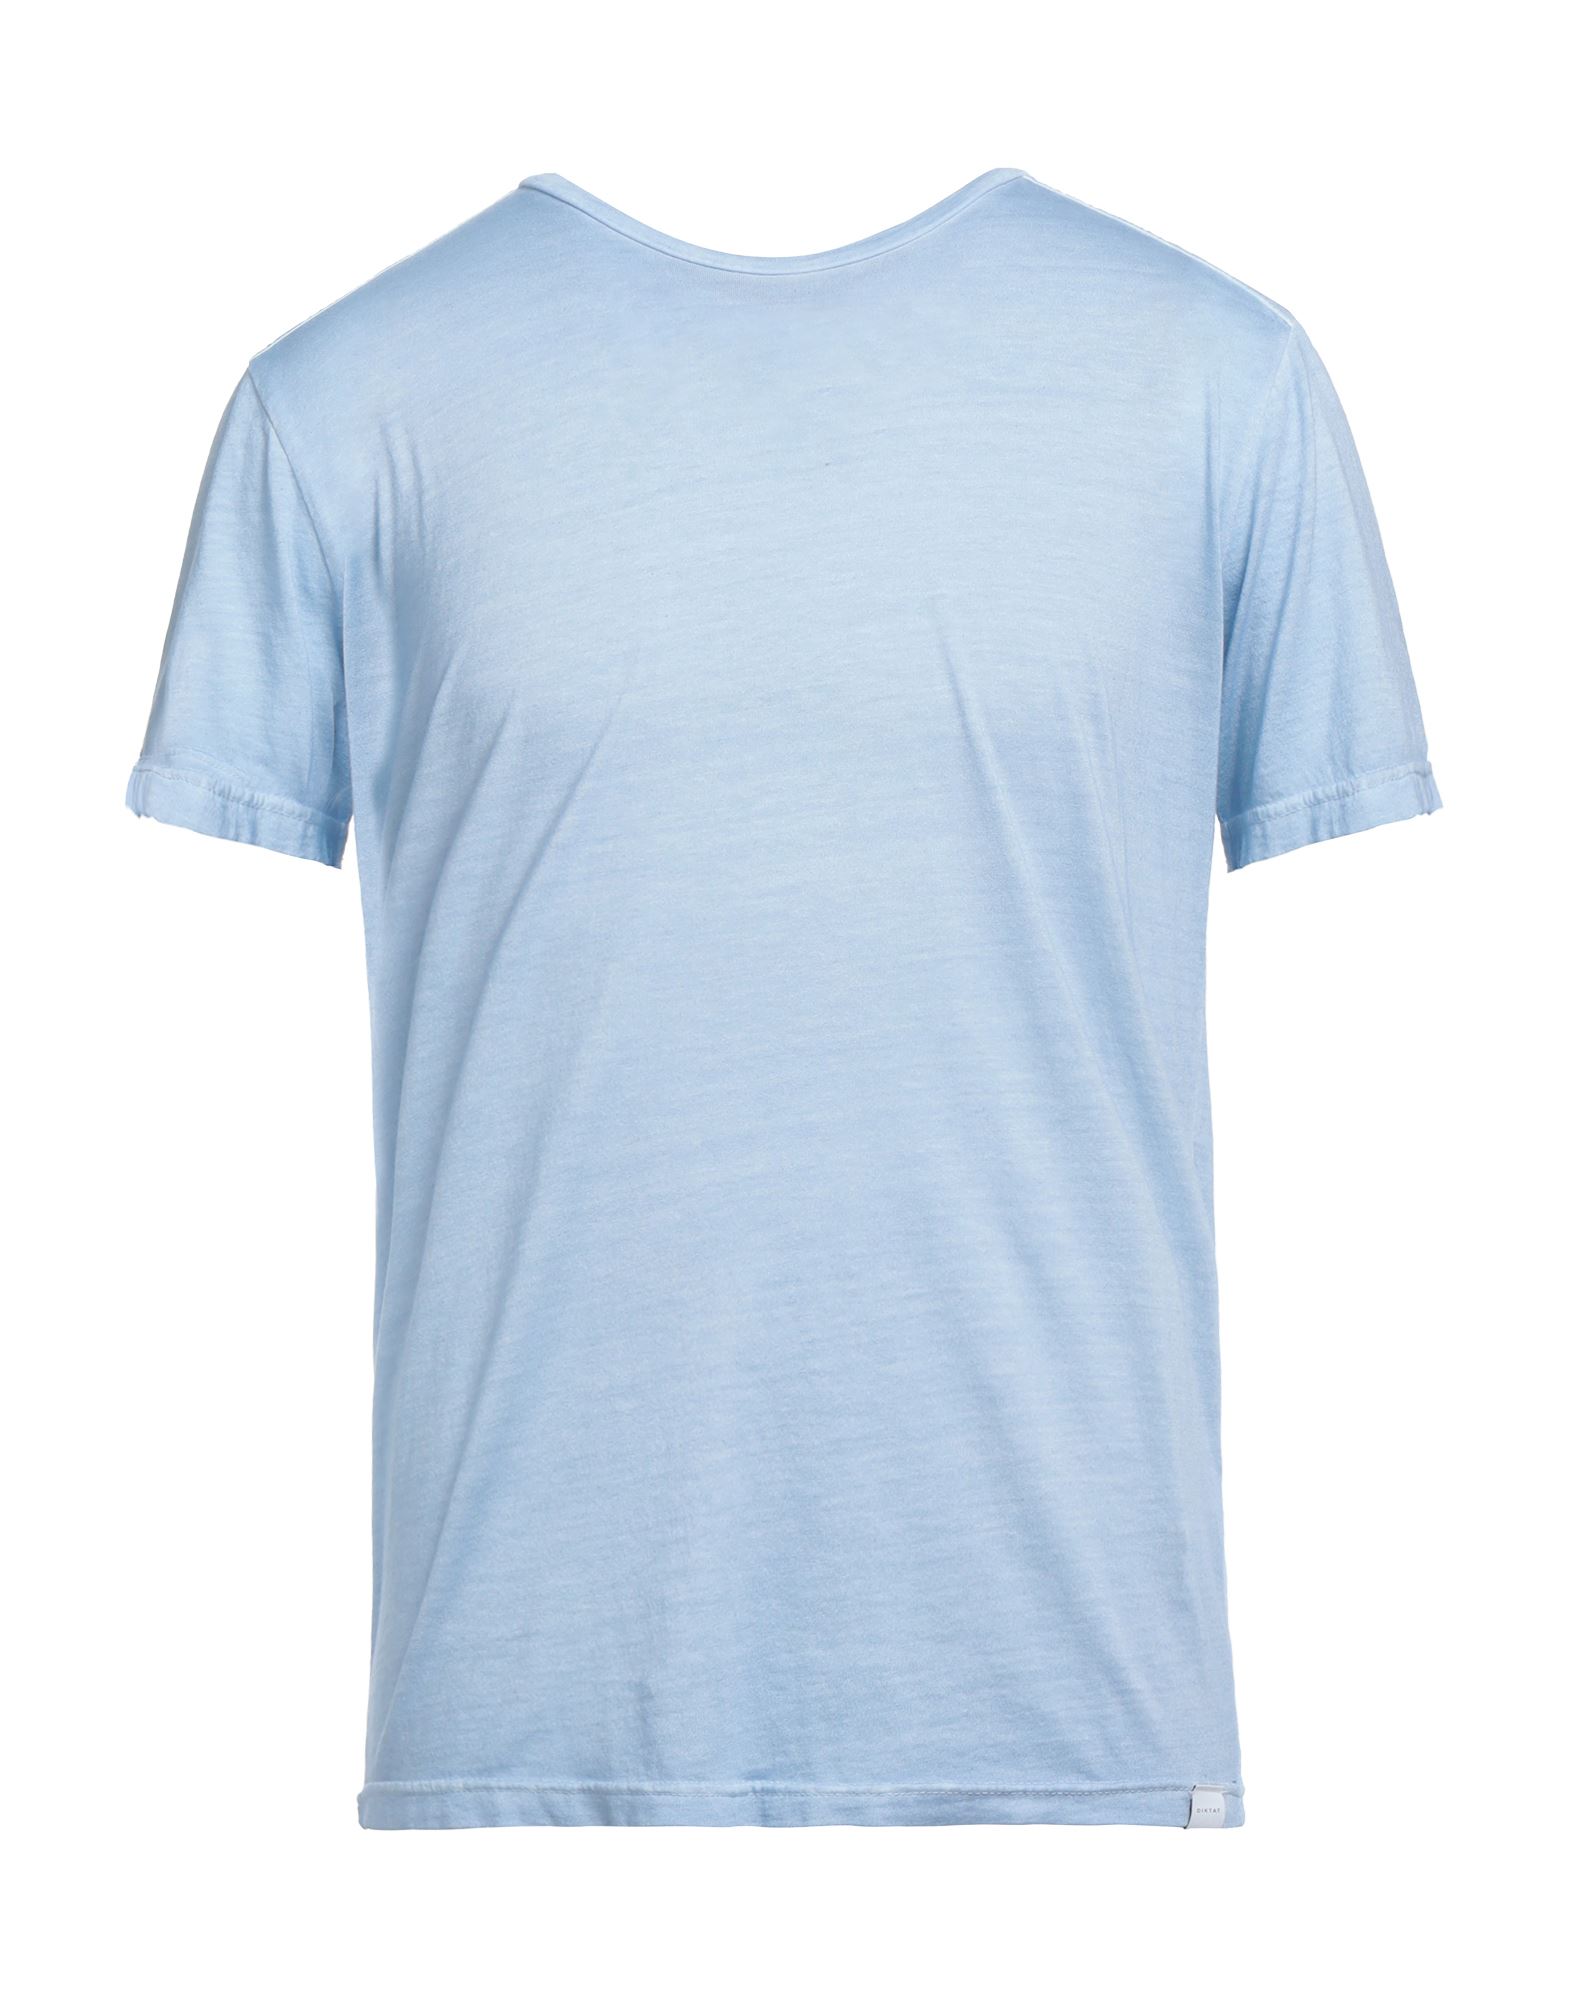 Diktat T-shirts In Blue